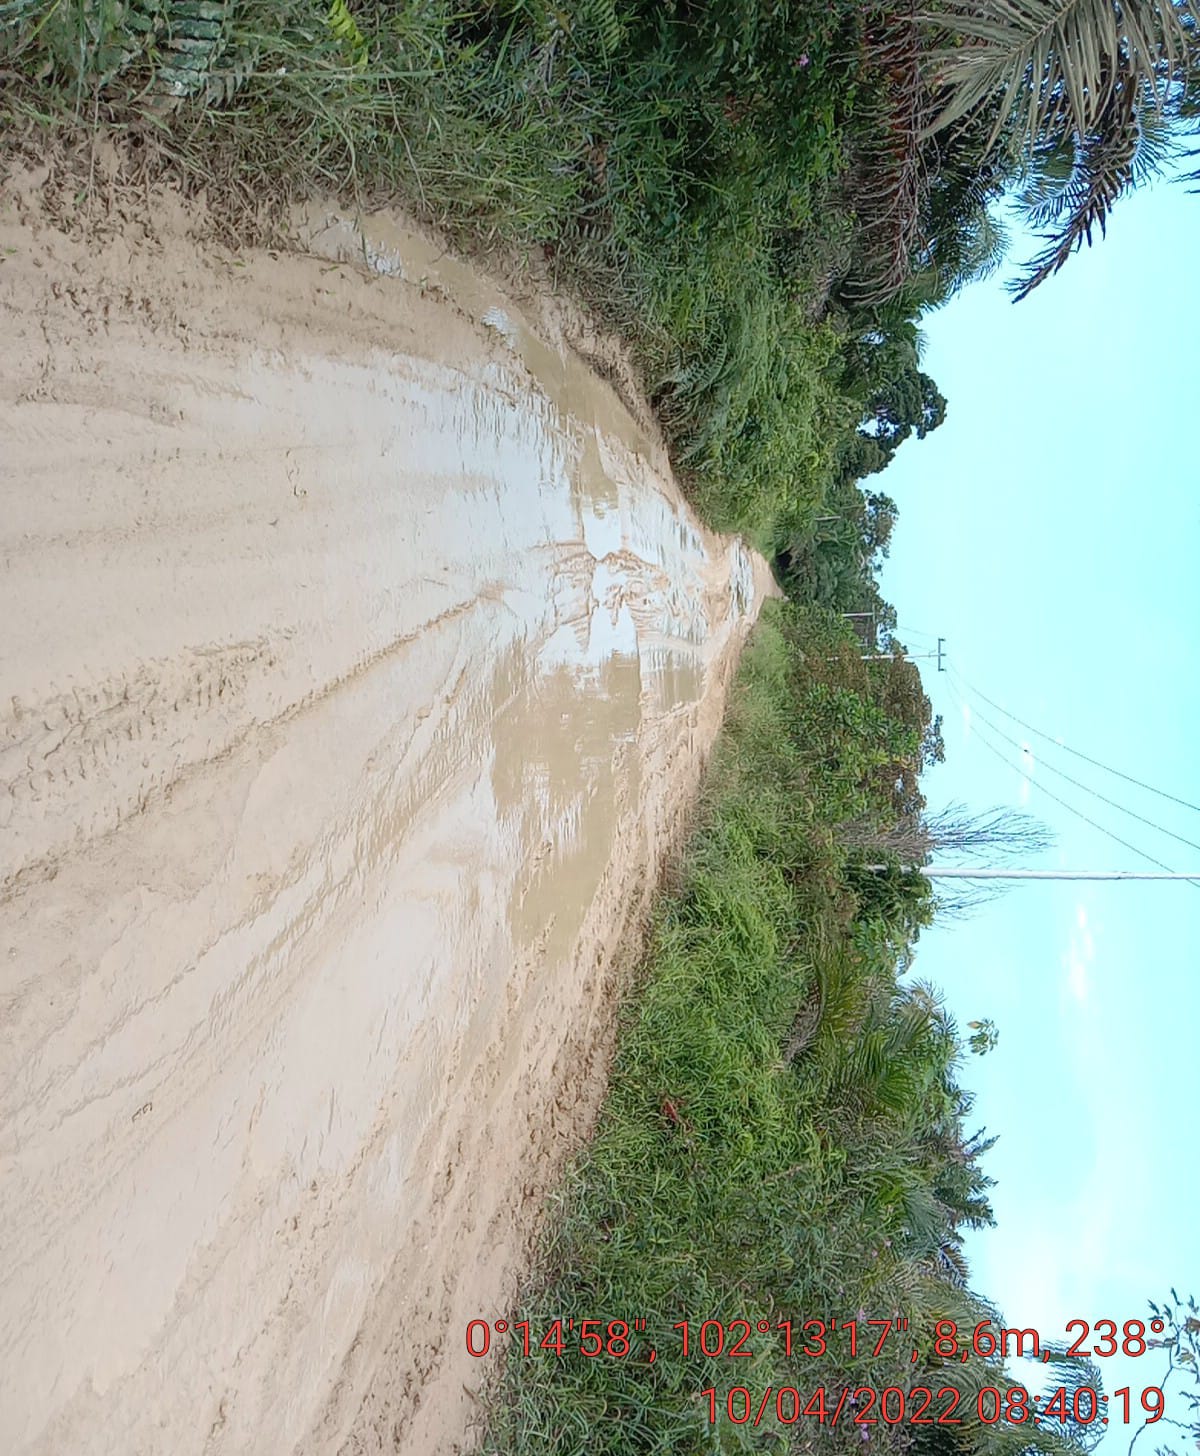 Jalan Utama Desa Ransang Menuju Ibukota Pelalawan Rusak, Becek dan Berlumpur